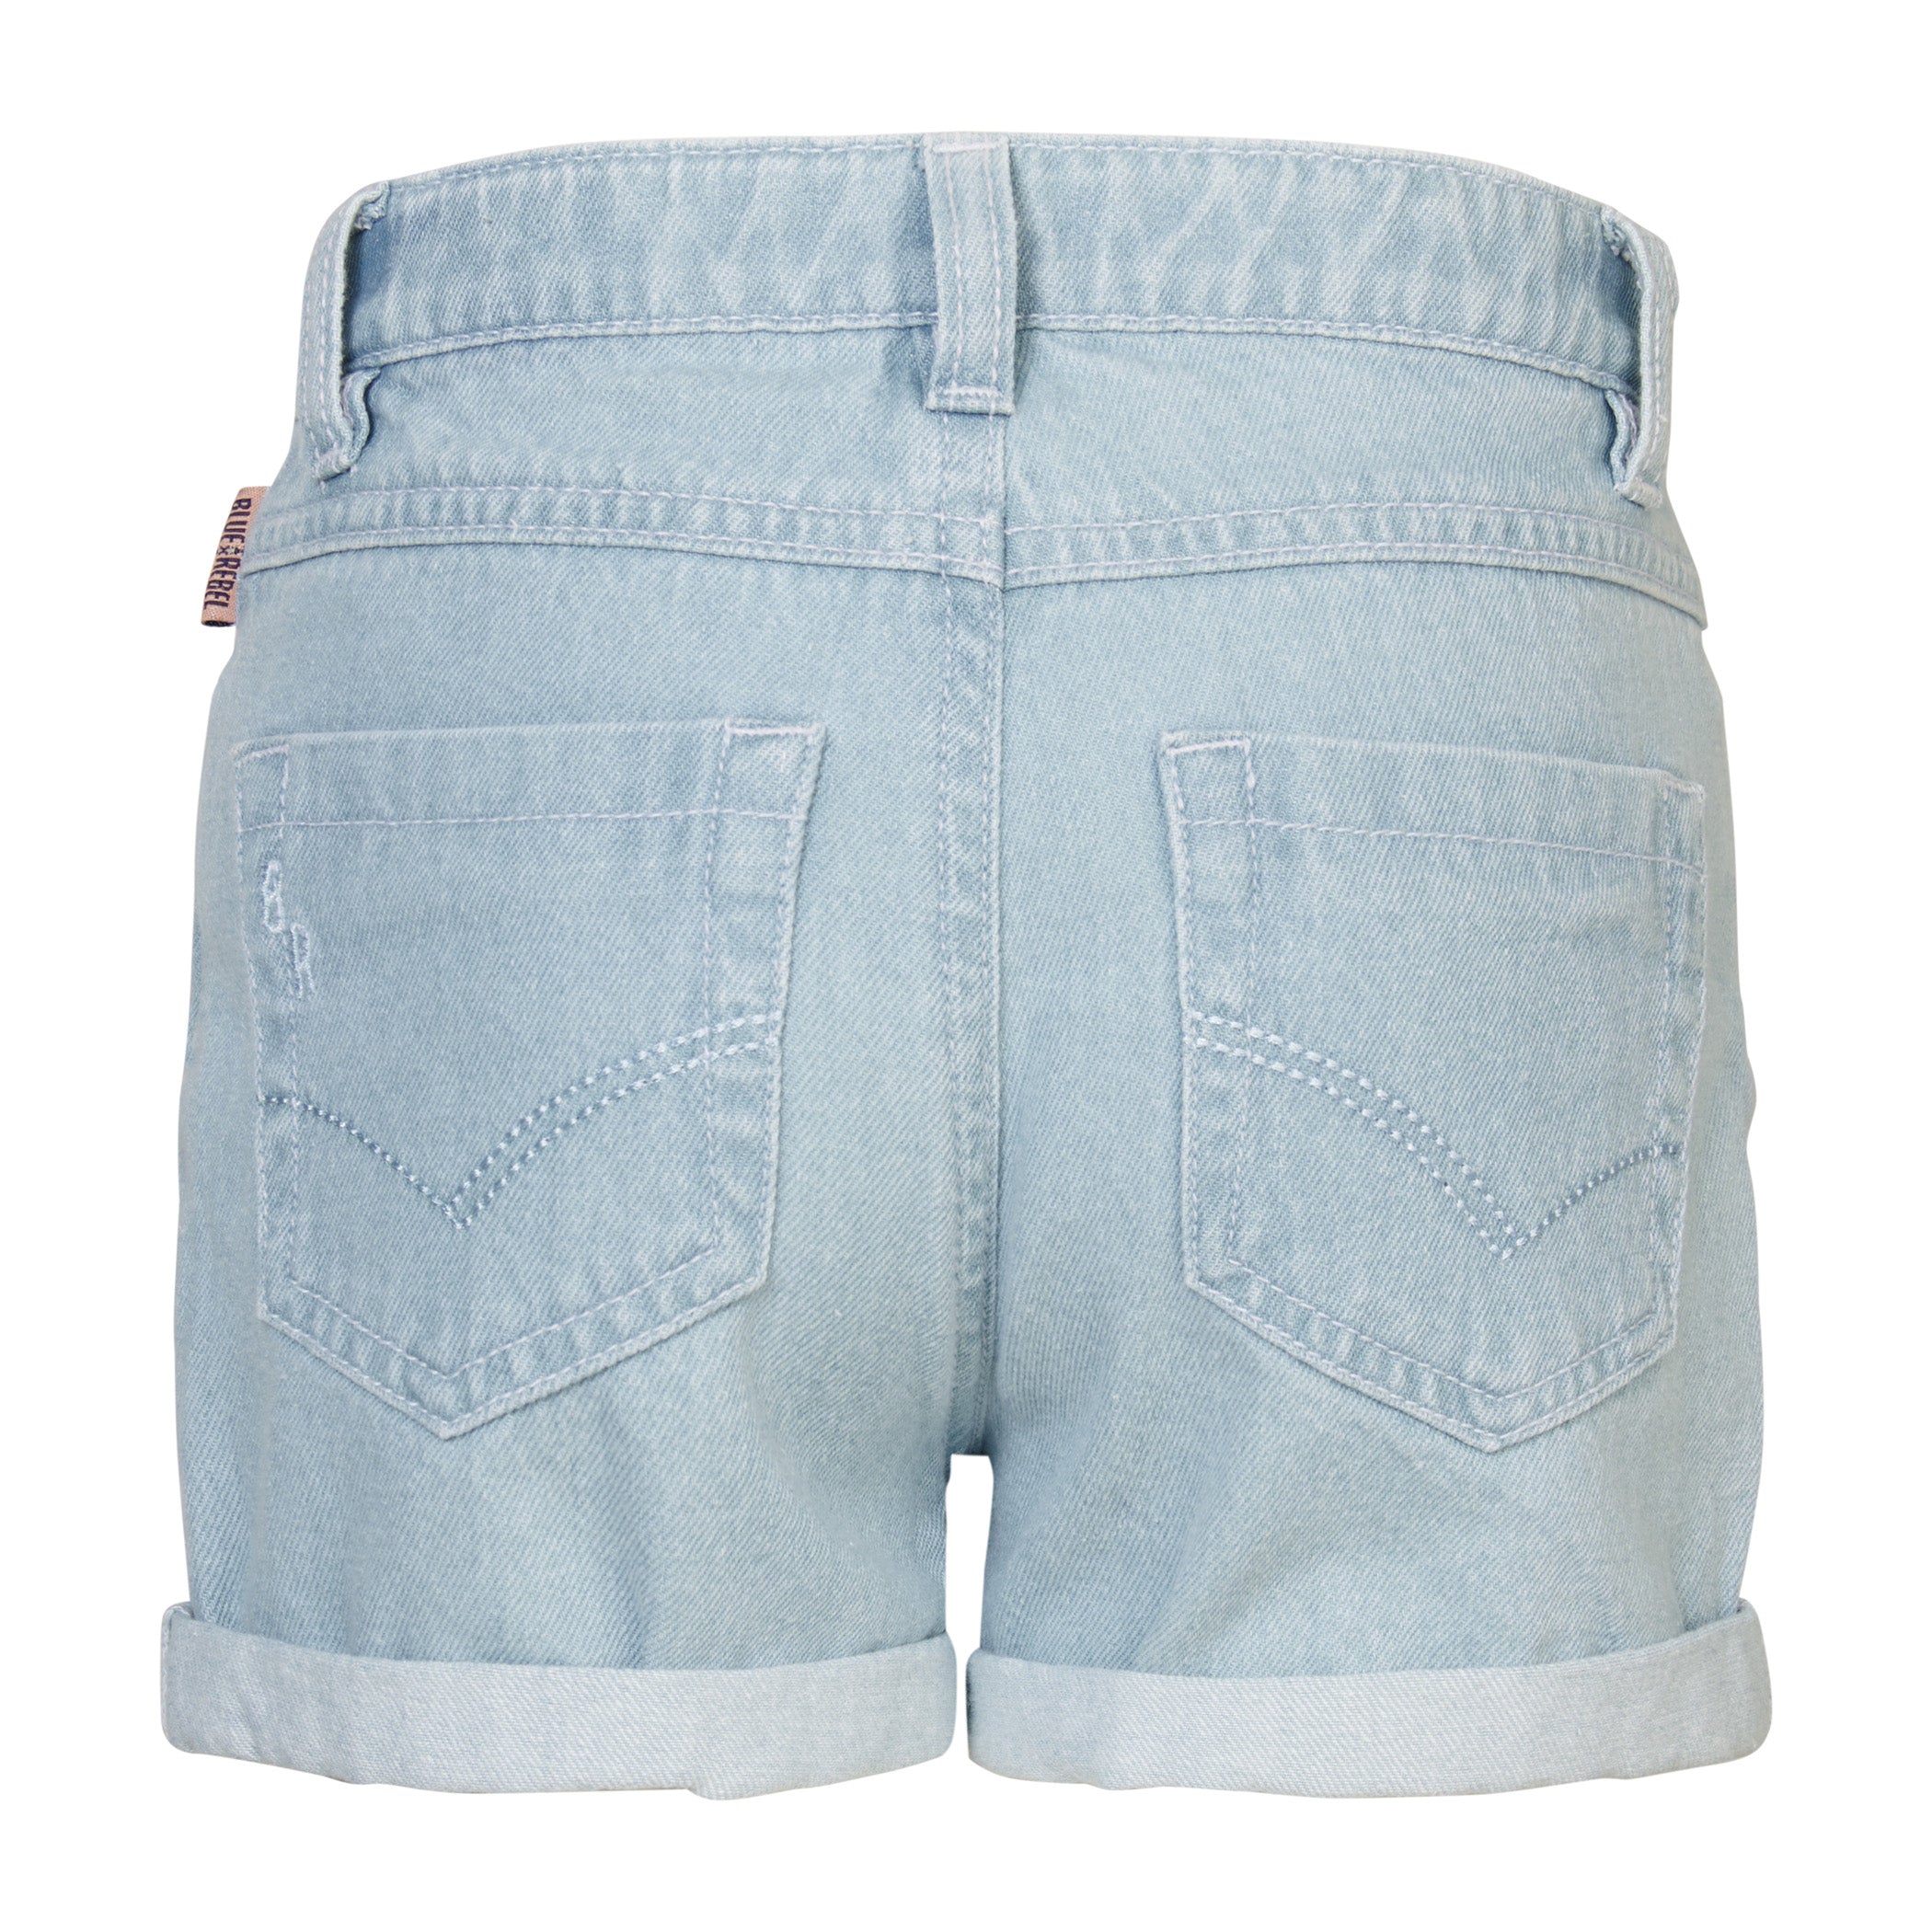 Meisjes Girls Denim Pants Short Loose fit Imogen van  in de kleur Denim Light Blue in maat 176.